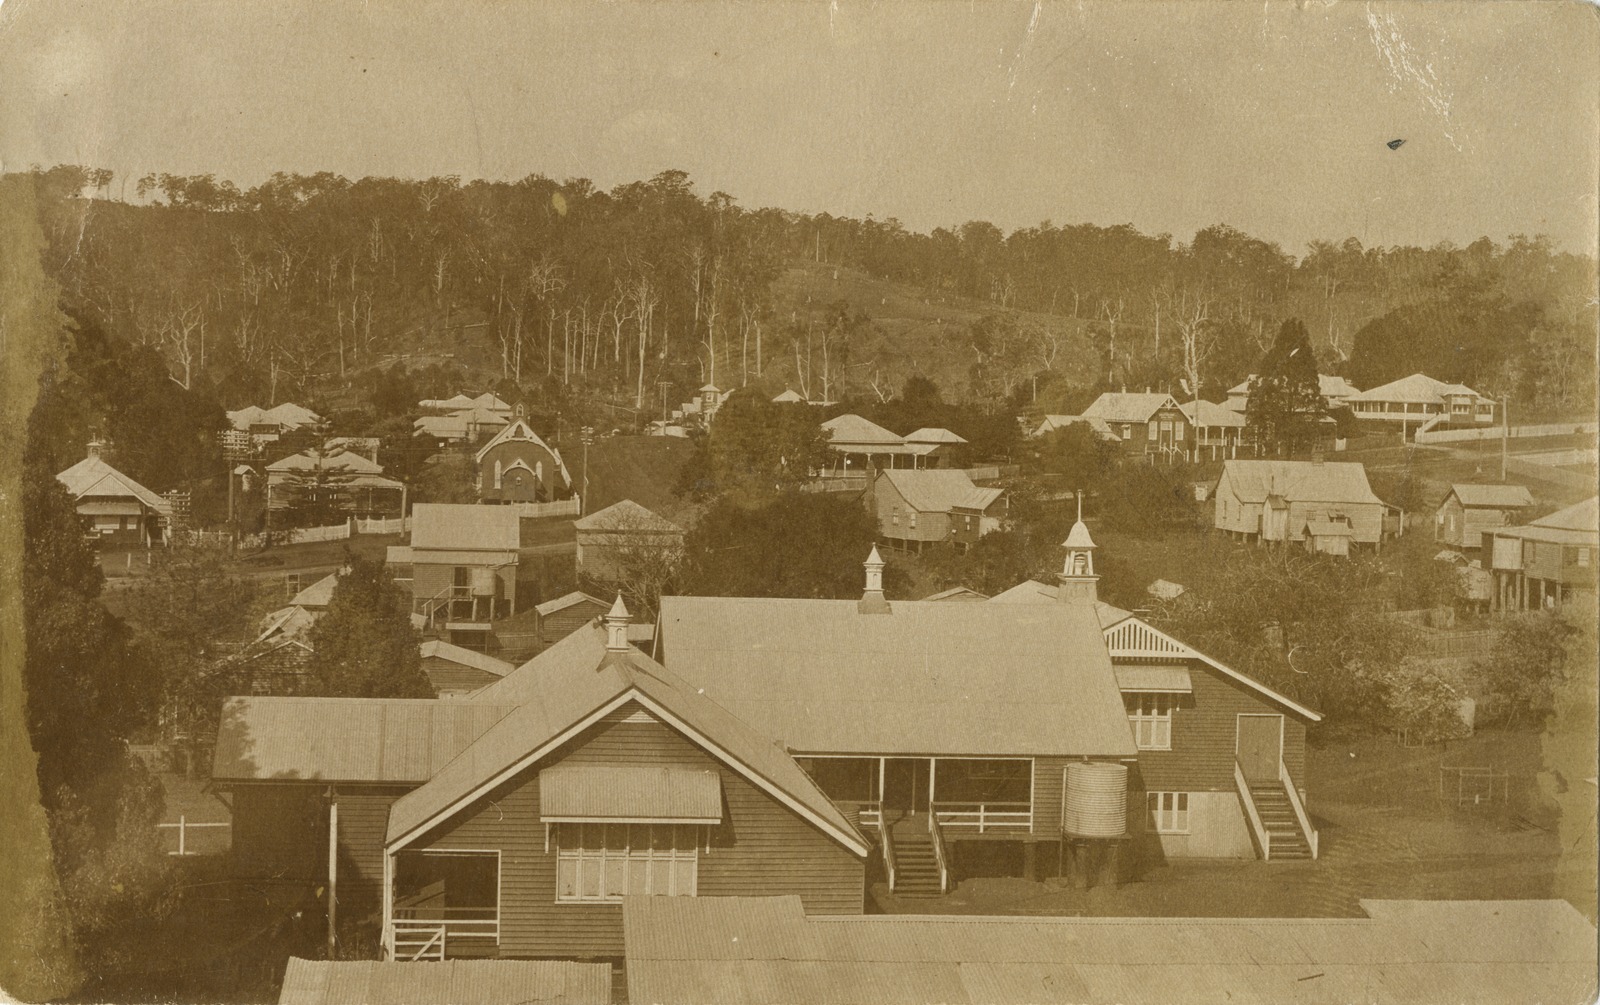 View overlooking the Nambour Rural School, ca. 1920.